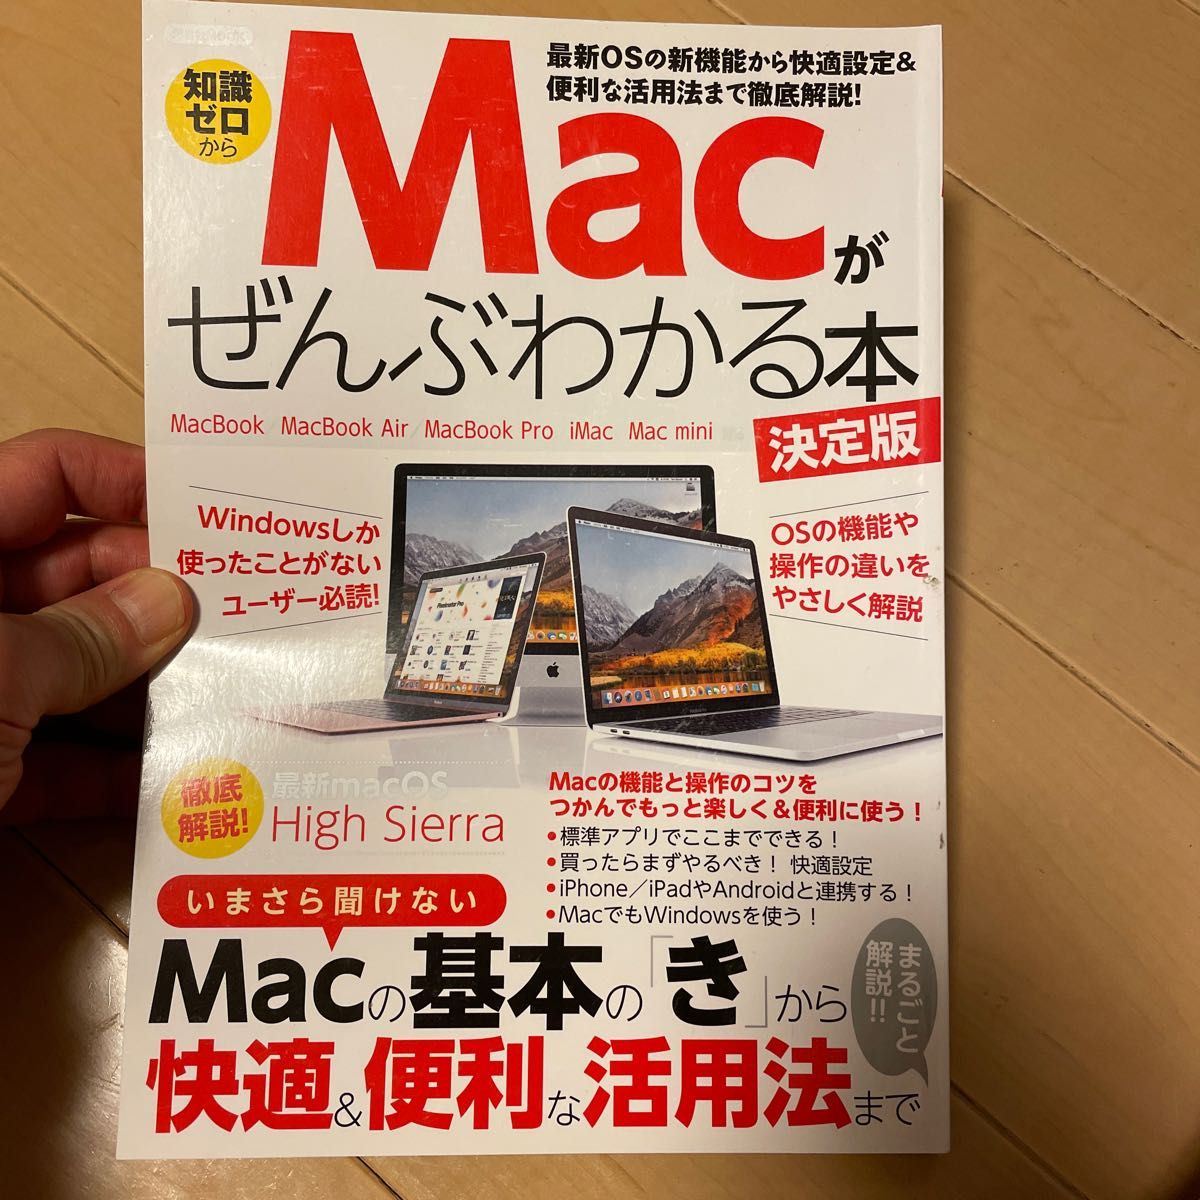 Macがまるごとわかる本 完全保存版